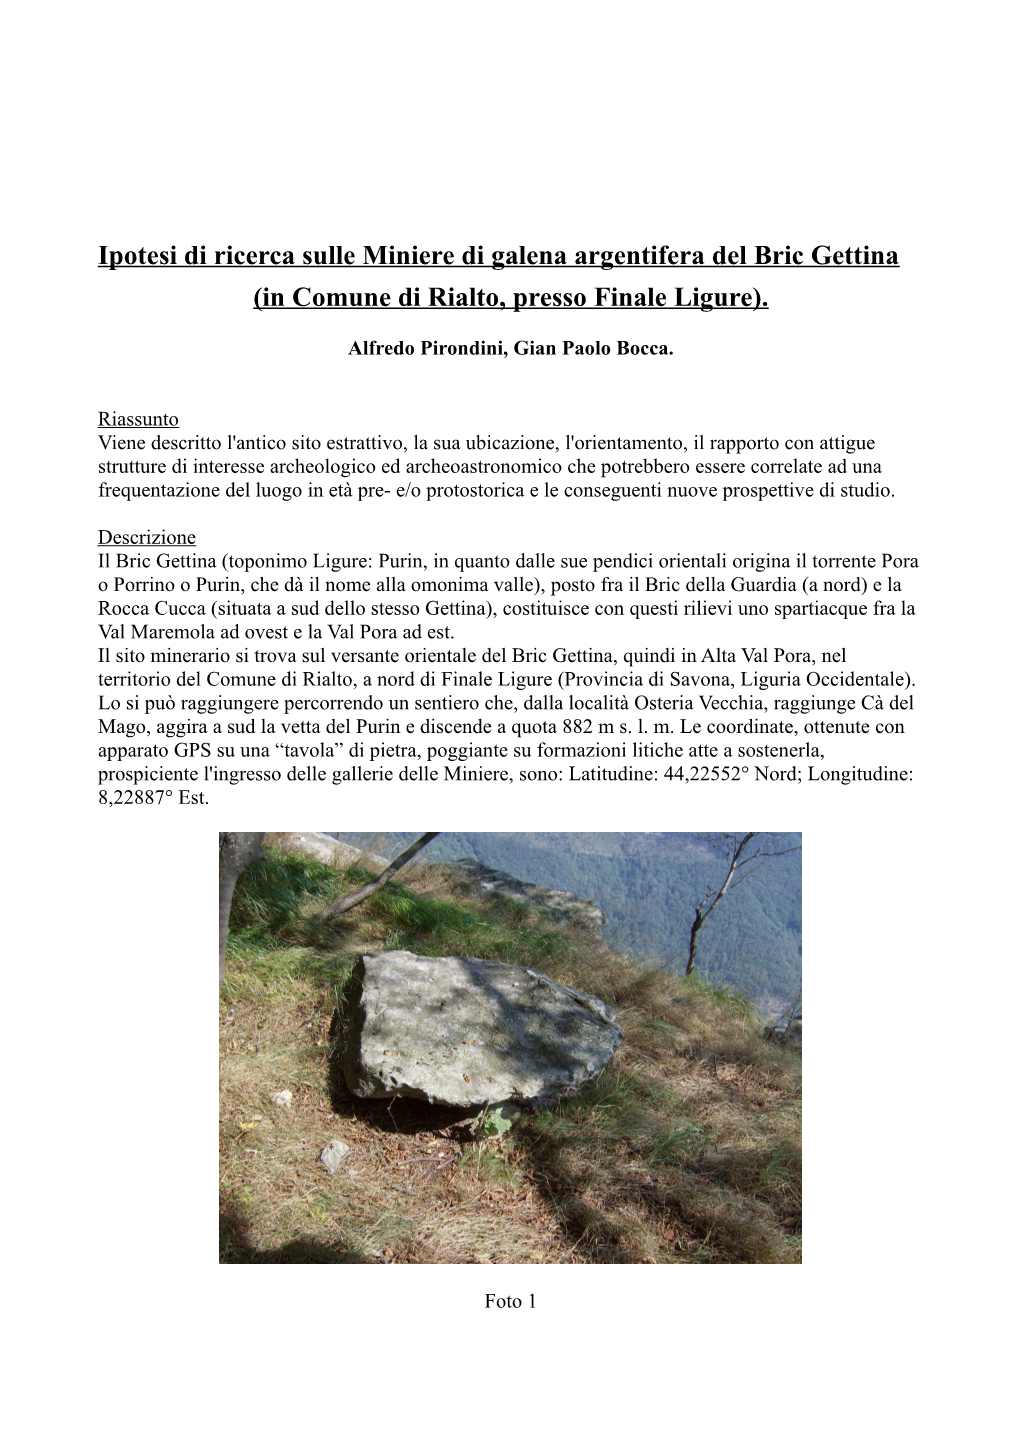 Ipotesi Di Ricerca Sulle Miniere Di Galena Argentifera Del Bric Gettina (In Comune Di Rialto, Presso Finale Ligure)